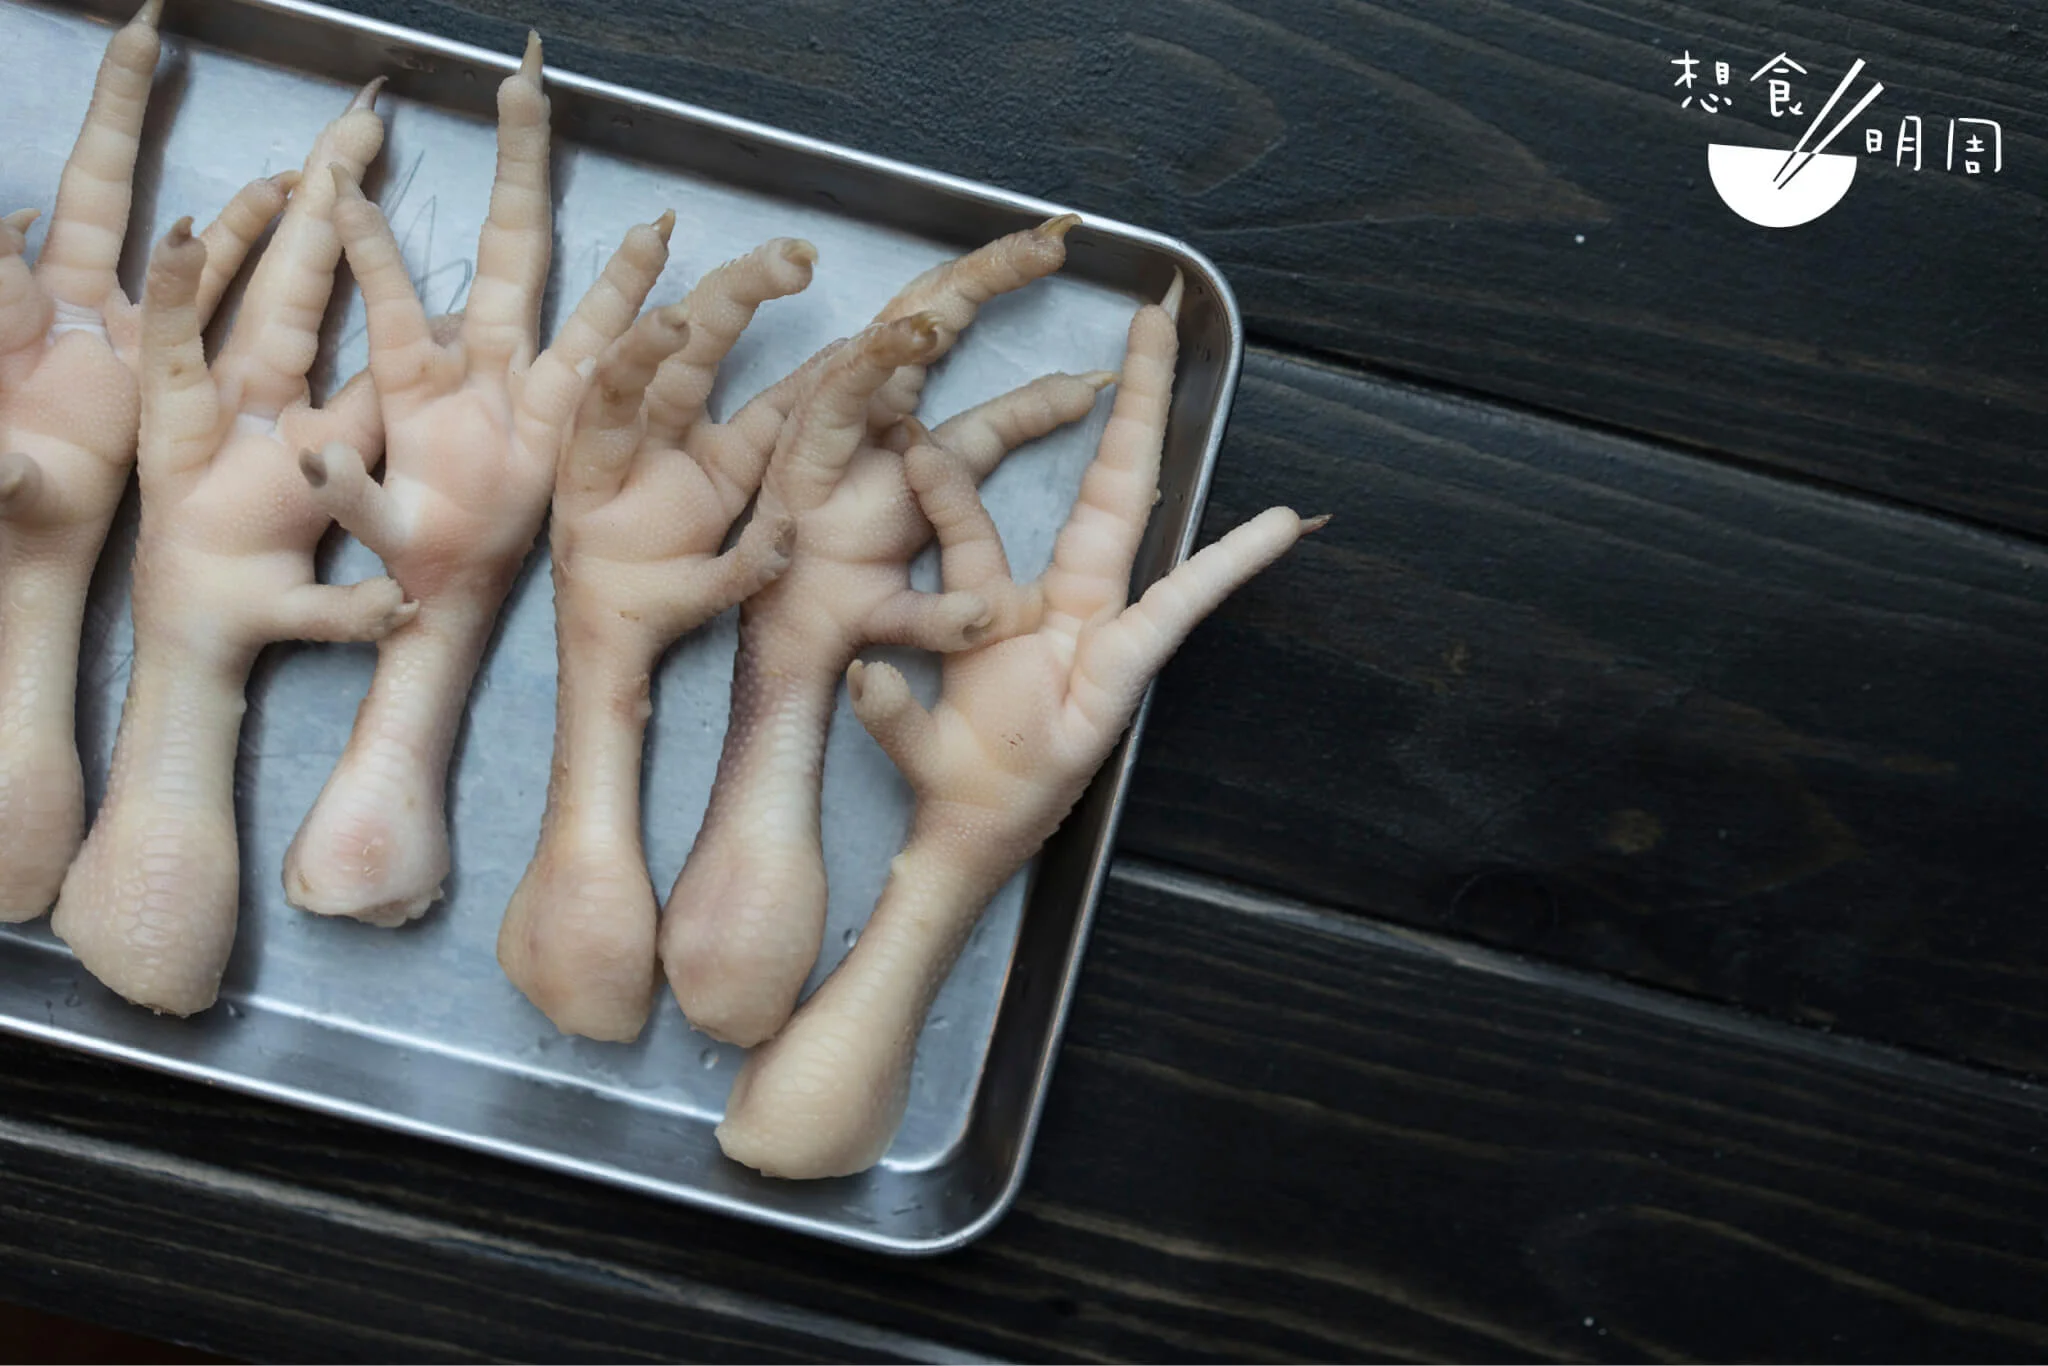 每隻雞腳約為手掌長。解凍後備用。